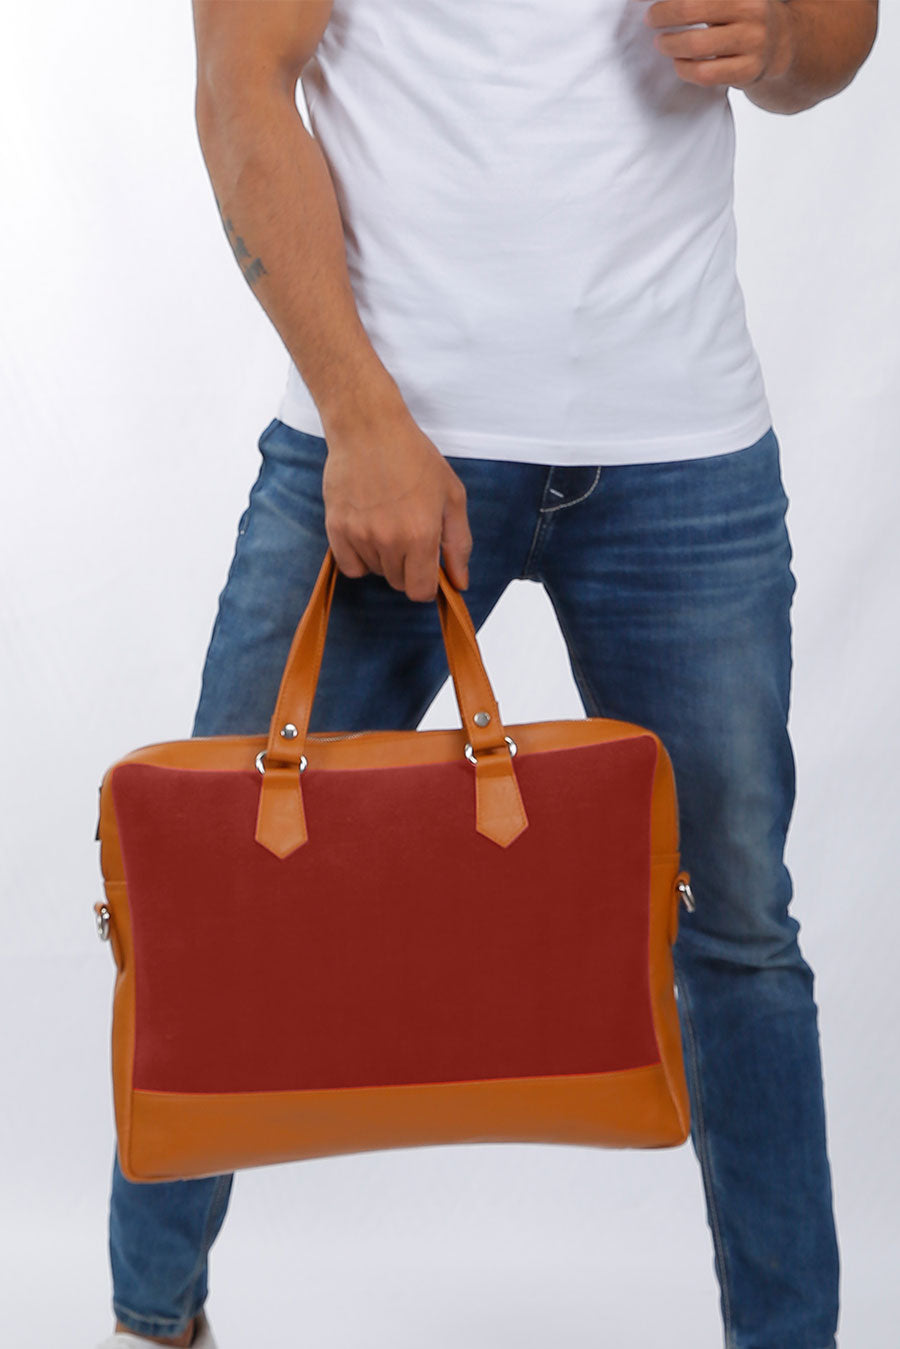 Ross Soft Jute 15 Inch Laptop Bag for Men